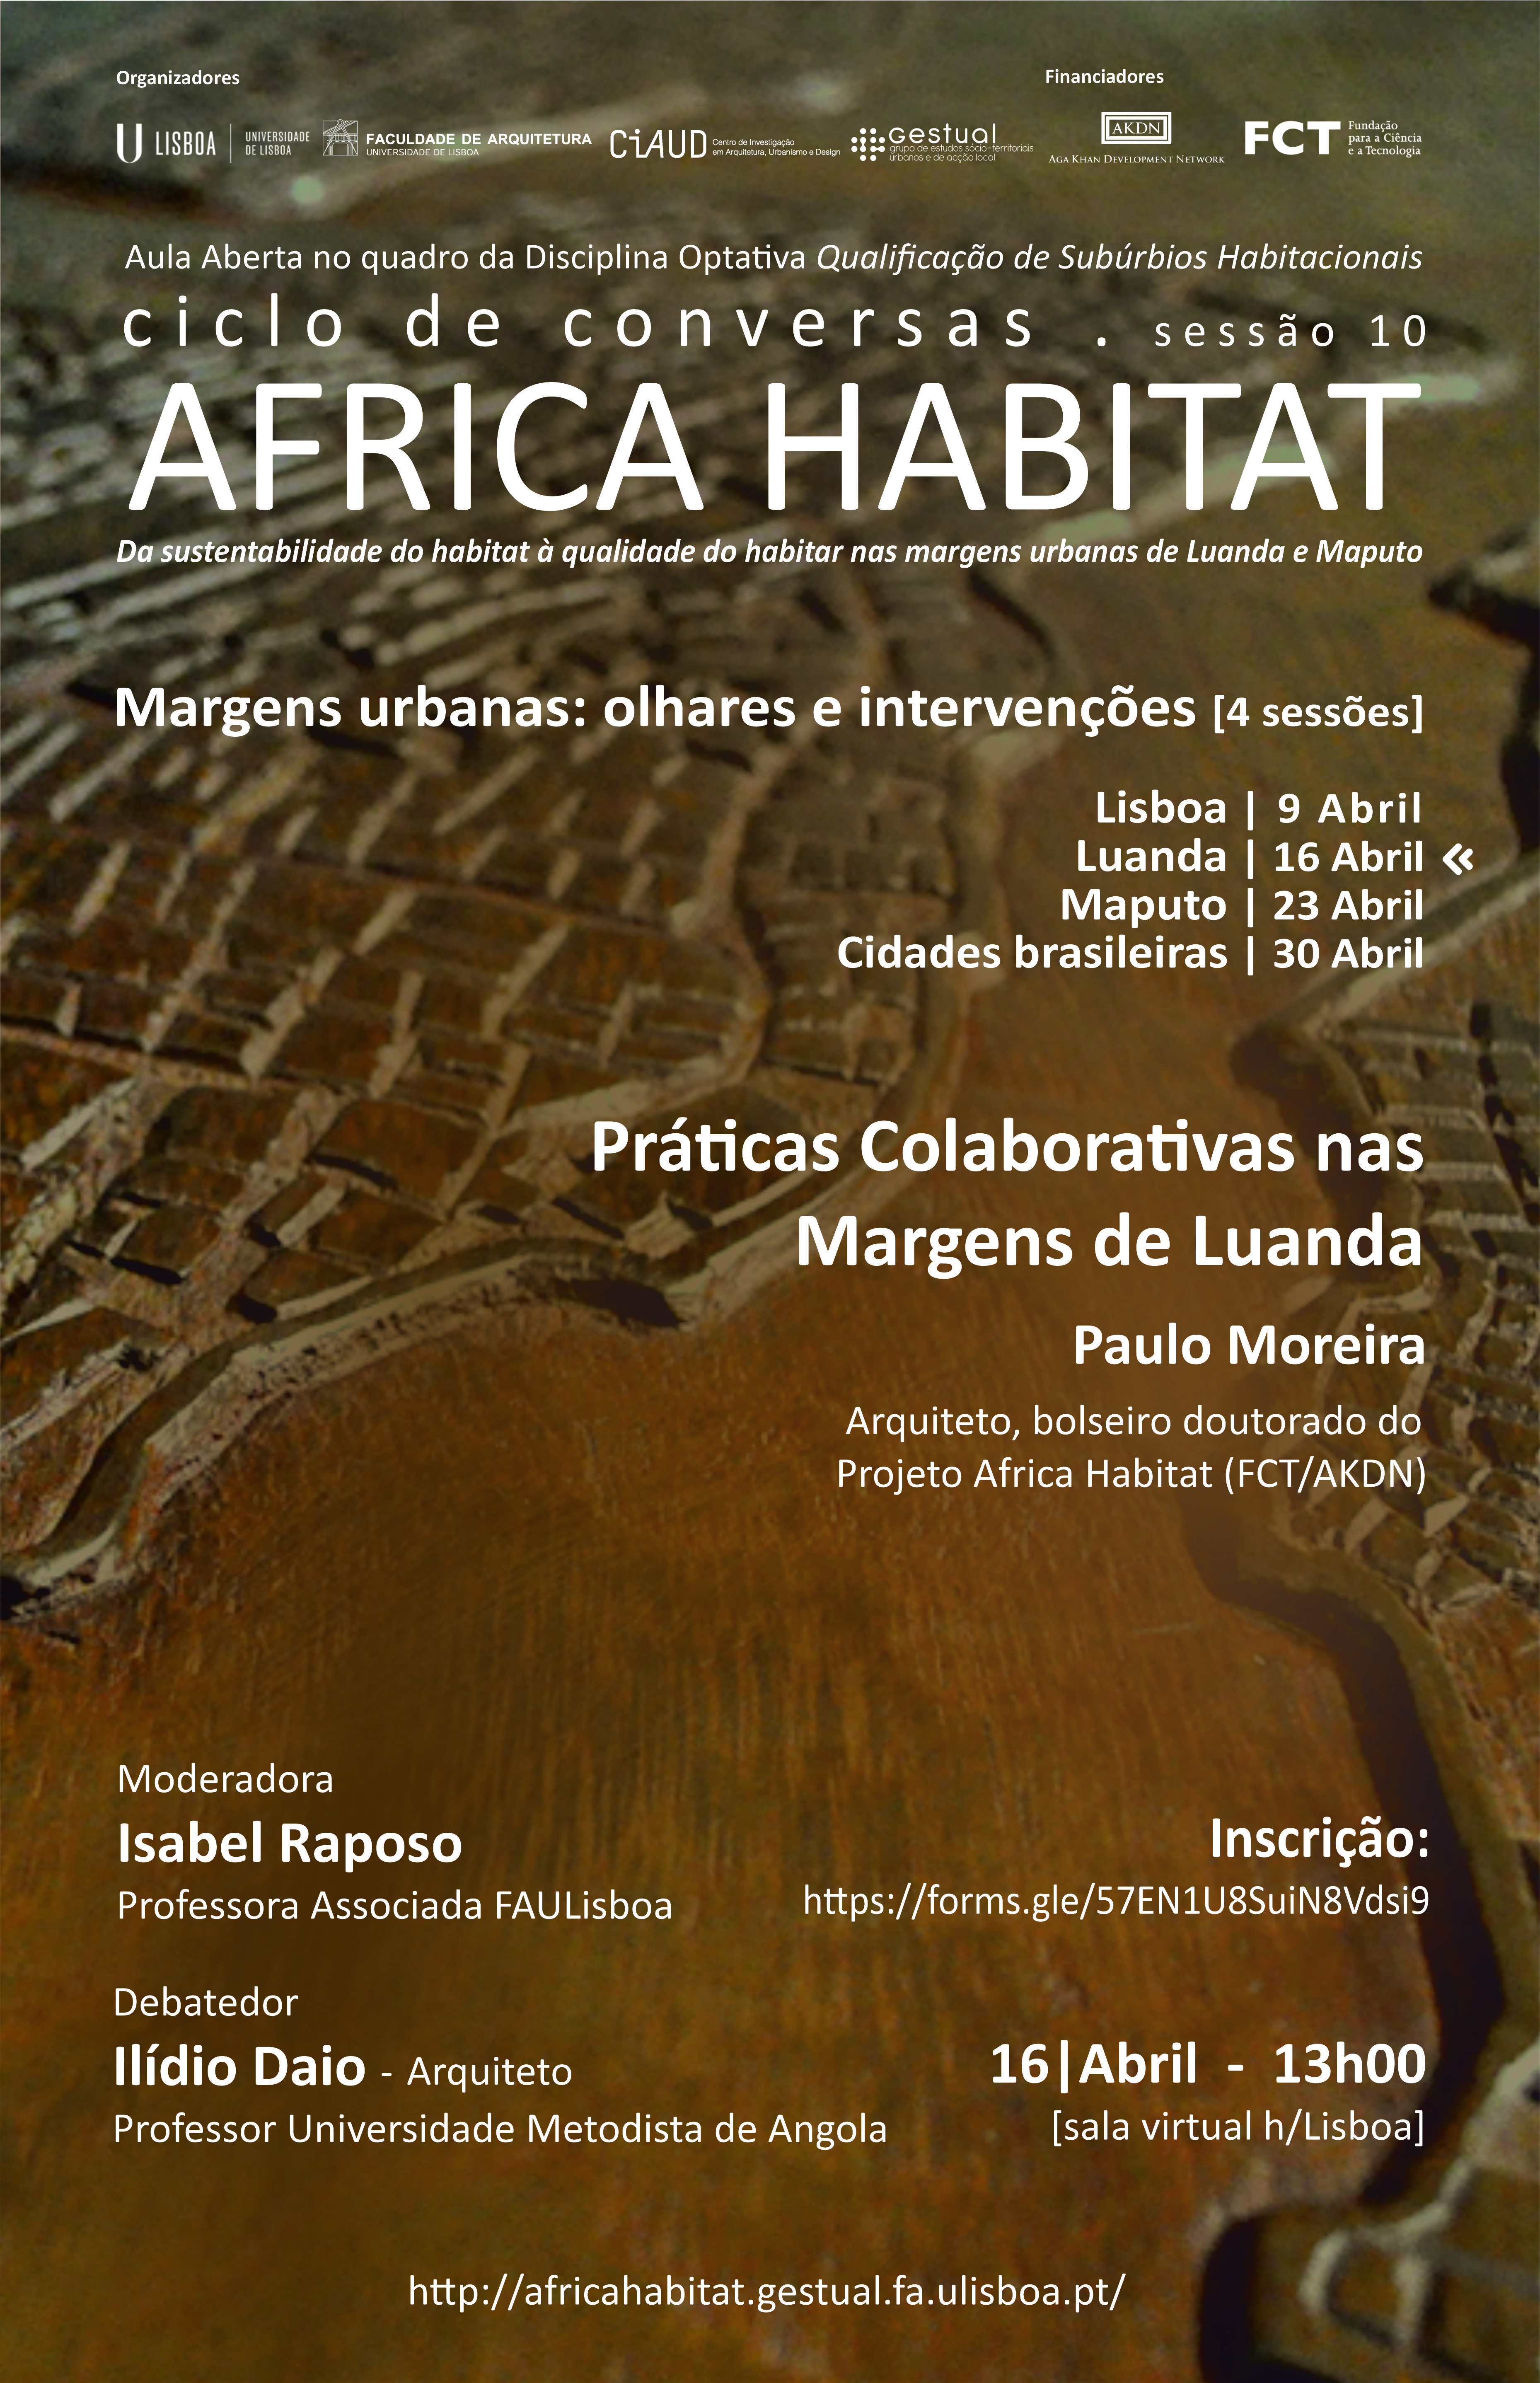 Ciclo de Conversas do Projeto África Habitat promovido pela Professora Isabel Raposo, com participação do Arquiteto Paulo Moreira